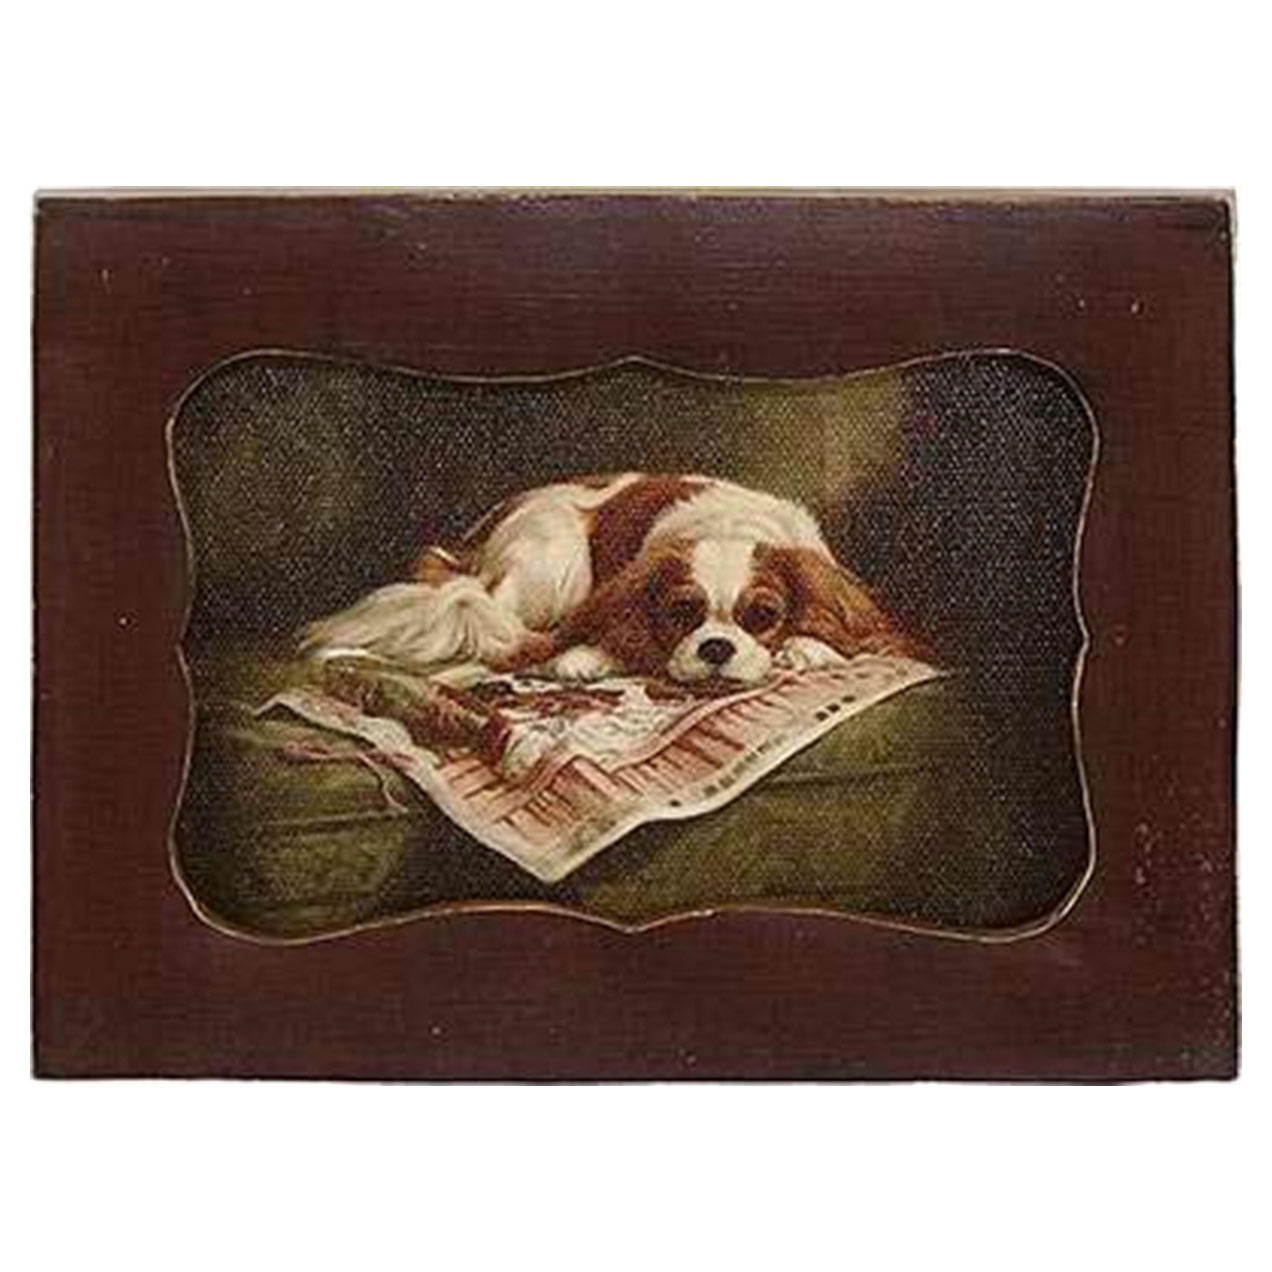 Картина в прямоугольной раме Glasar, спящая собака, масло, 10x2x12 см картина в раме glasar масло 15x2x20см